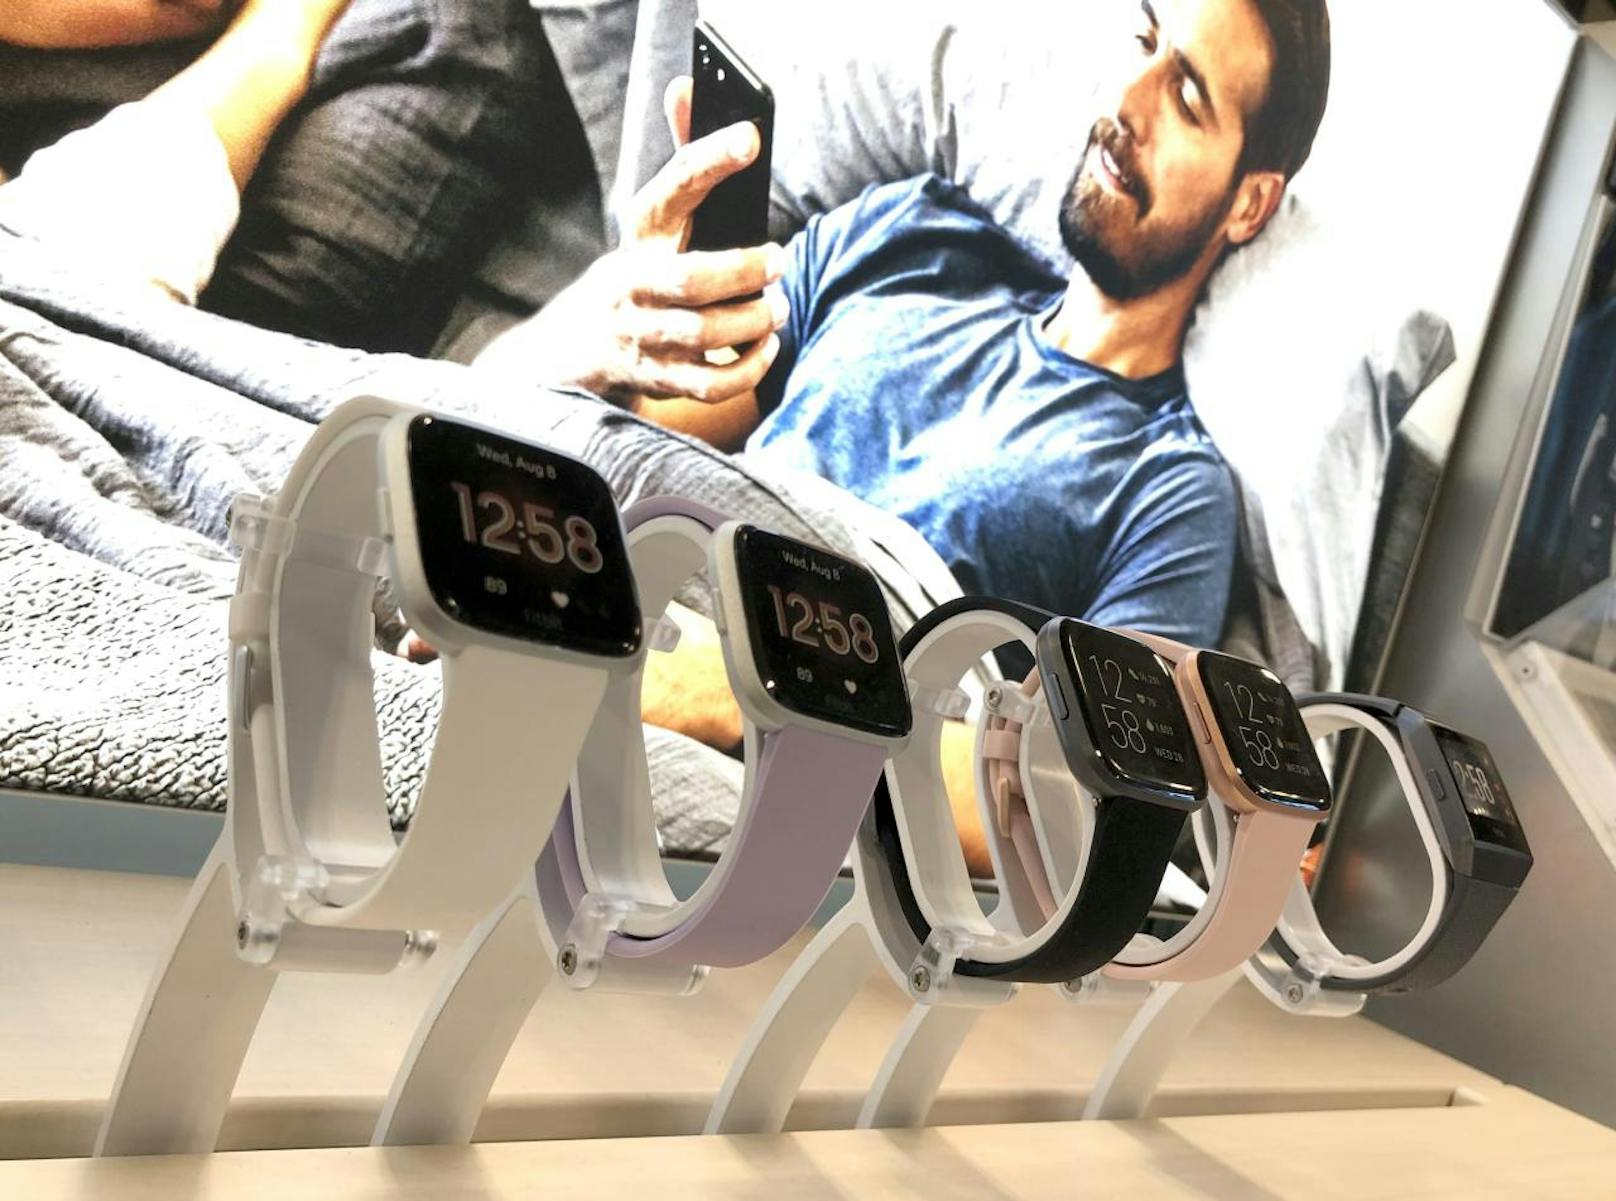 Der Tech-Gigant will wie die Konkurrenz von Apple und Microsoft groß ins Gesundheitsgeschäft einsteigen. Vor kurzem kaufte sich Google den Entwickler Fitbit, der Smartwatches und Fitness-Tracker herstellt.